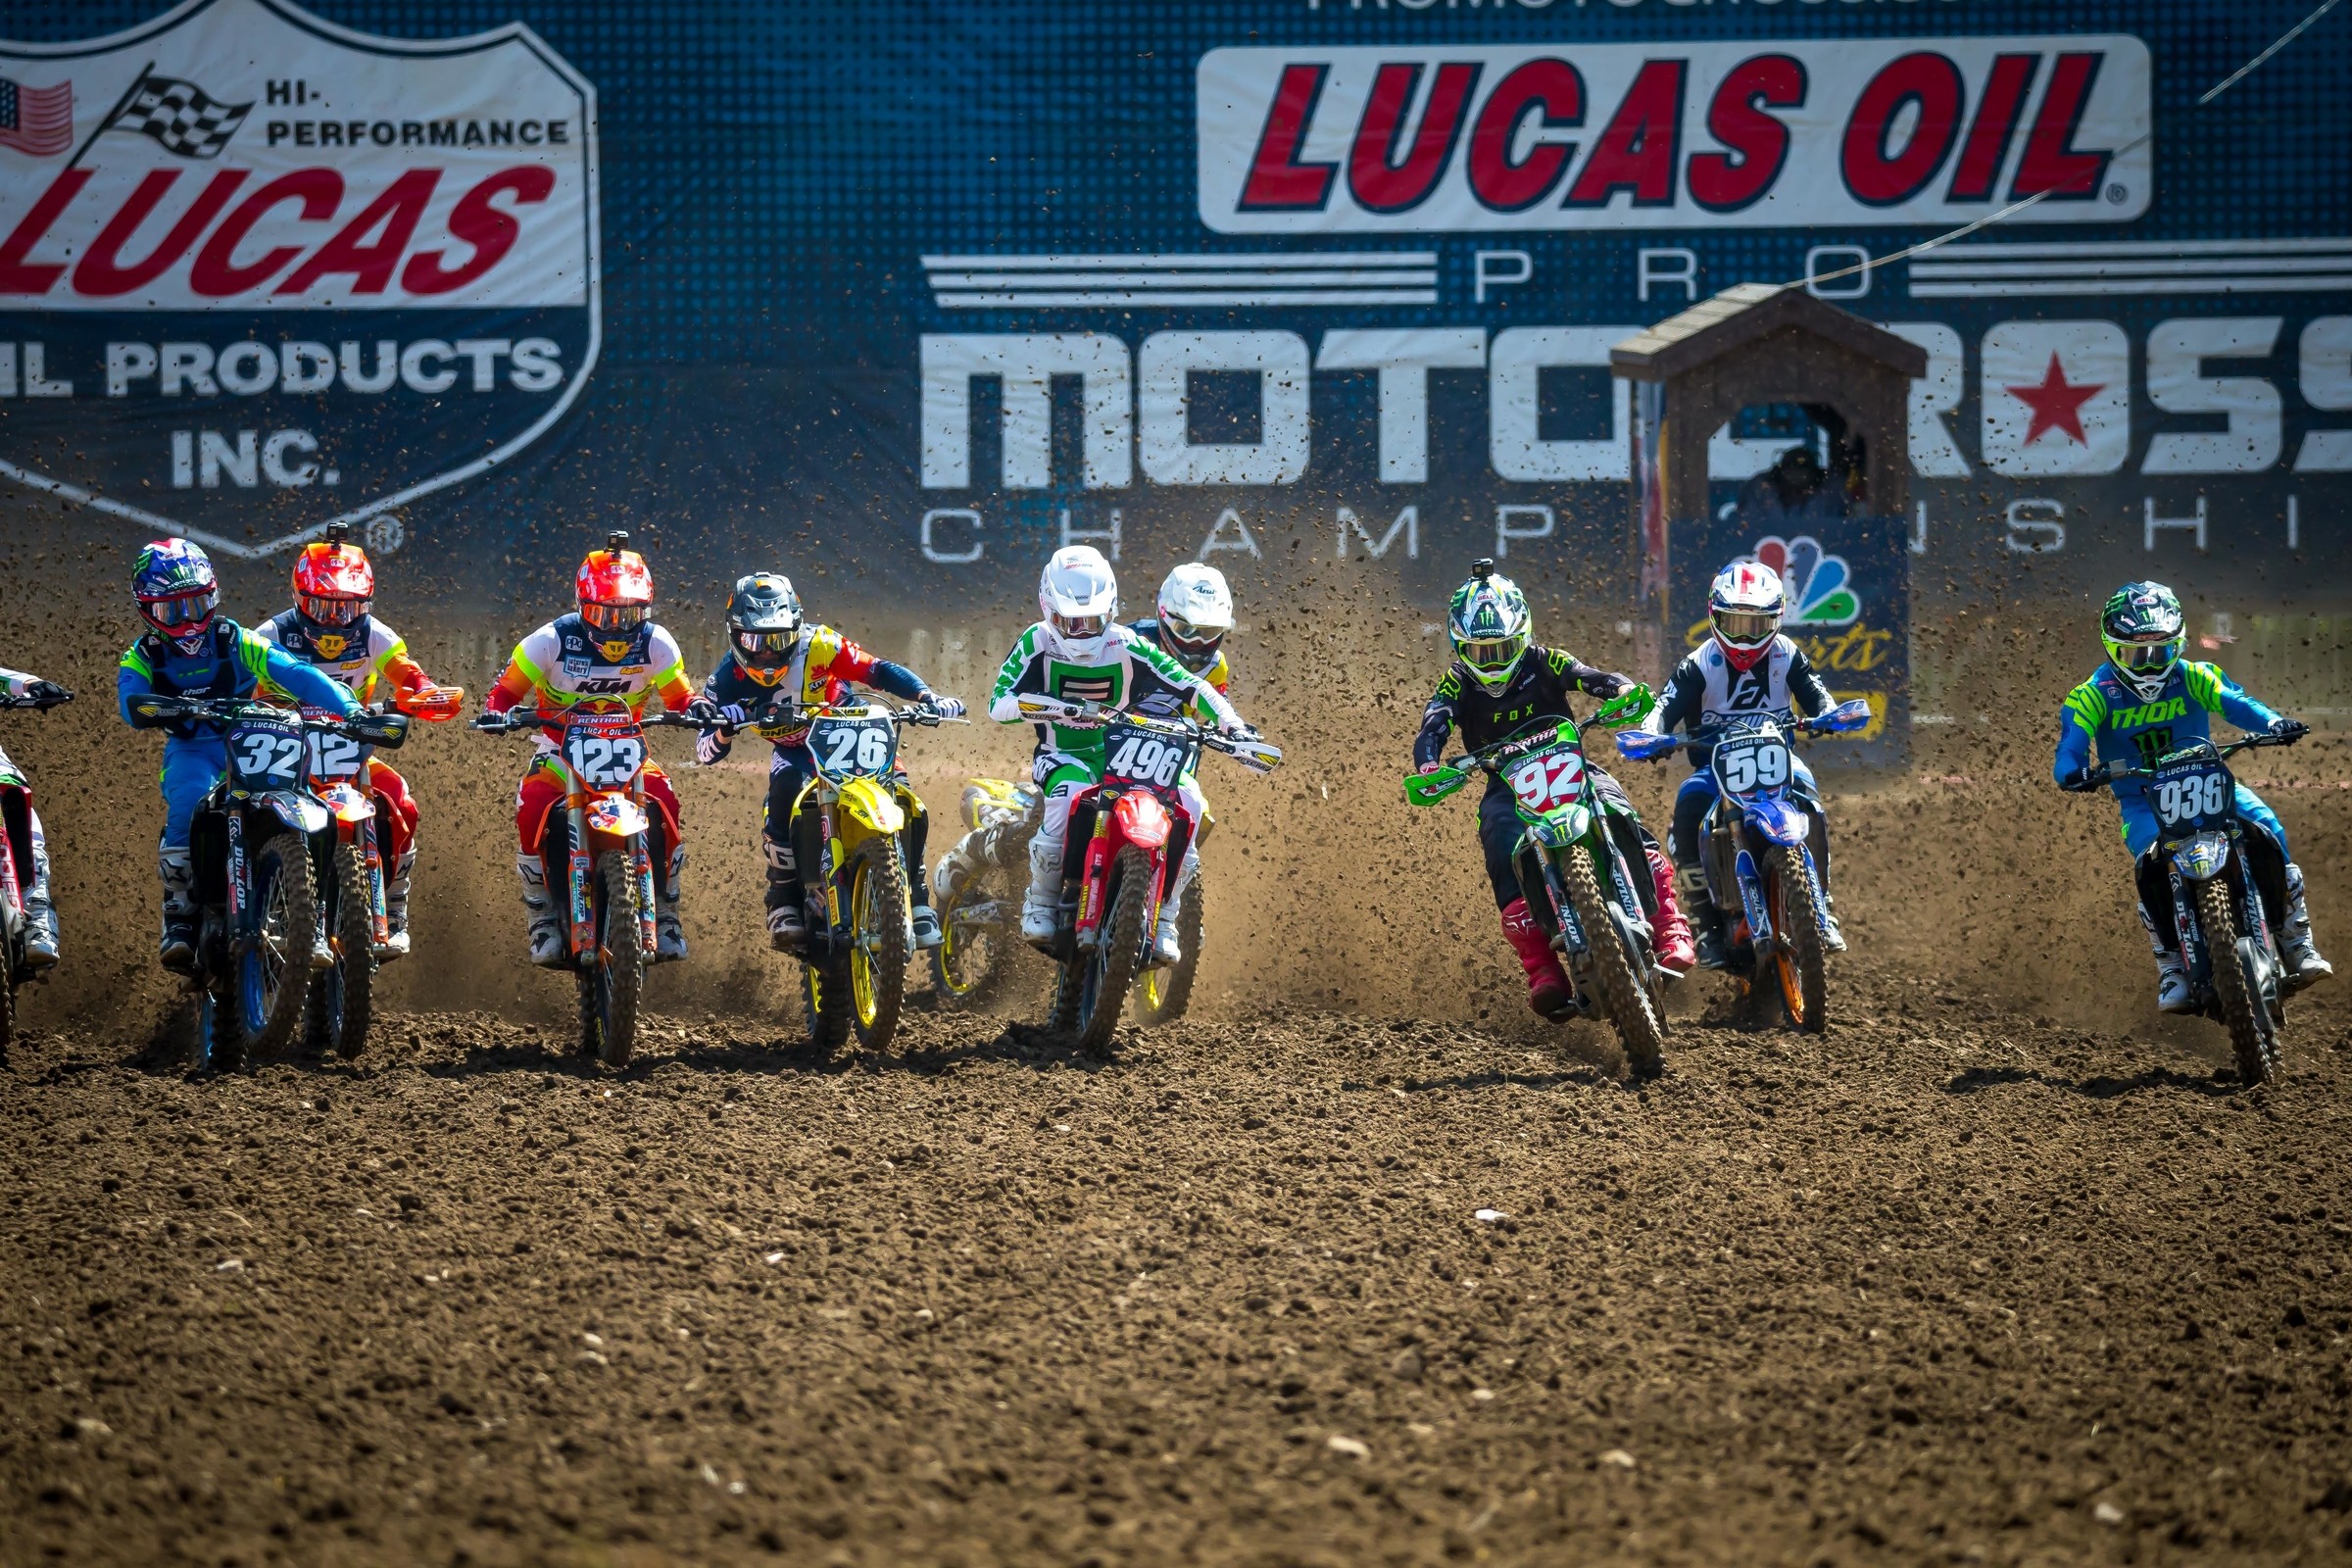 Start of 2020 Lucas Oil Pro Motocross Championship Postponed Temporarily